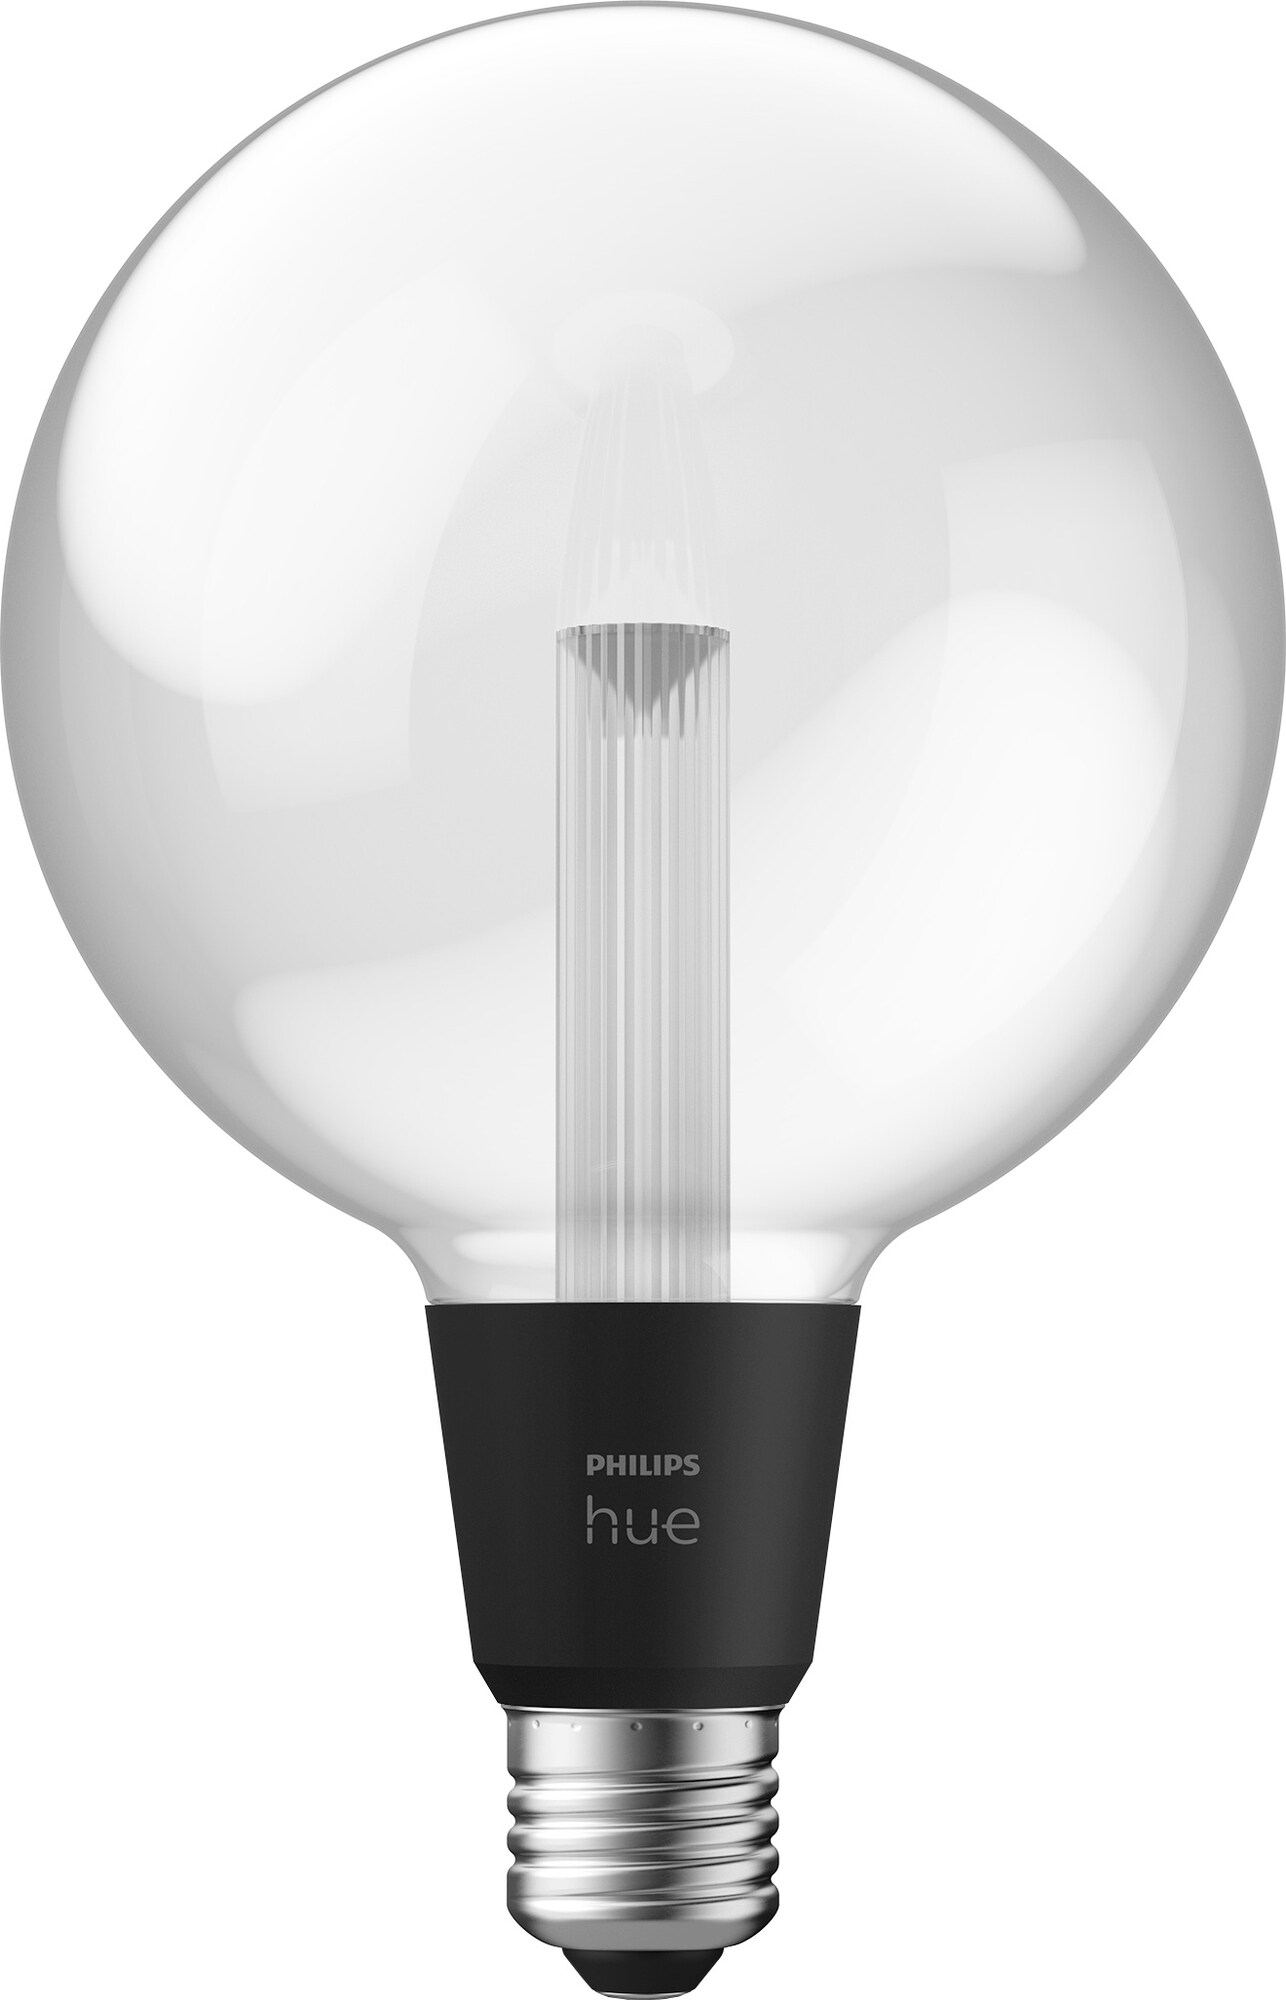 Philips Hue LightGuide Globe G125 E27 - Elkjøp